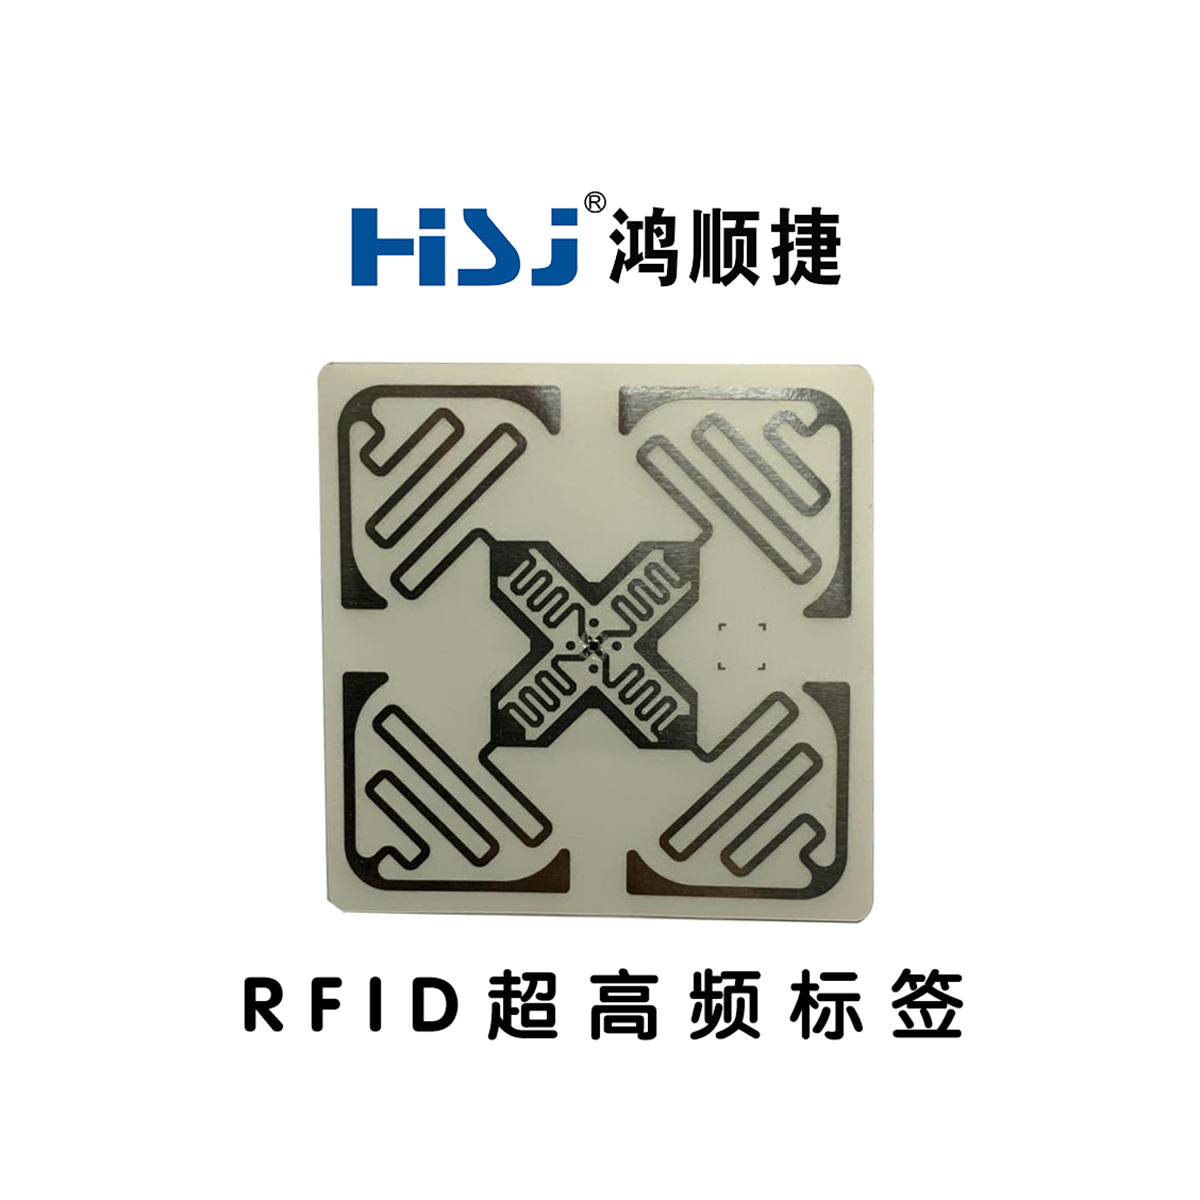 RFID标签的频率说明，超高频RFID标签的特性 